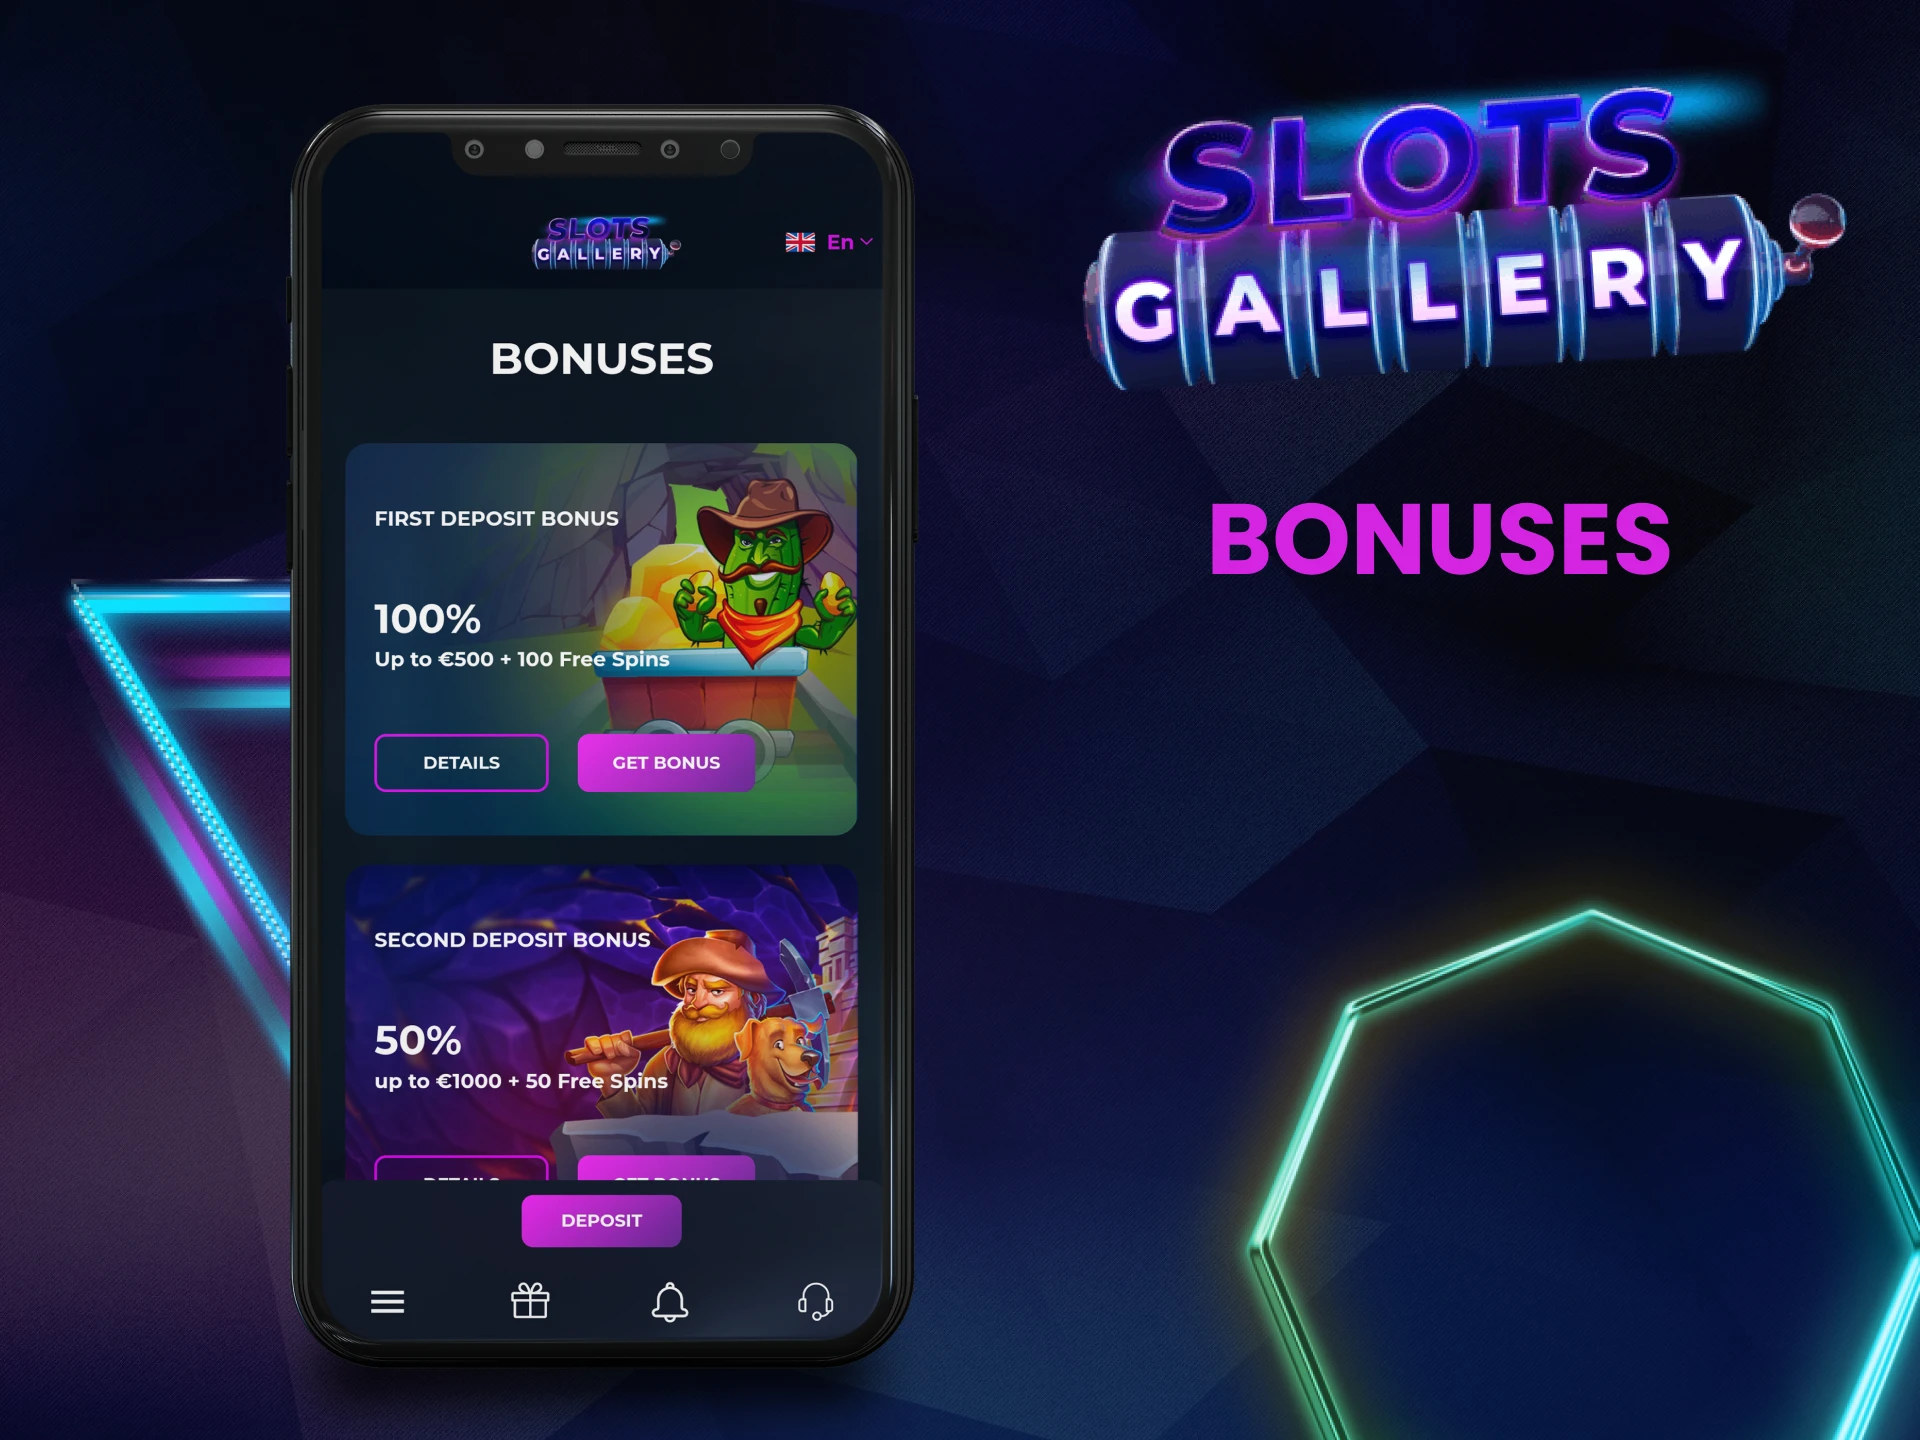 Get bonuses in the Slots Gallery app.